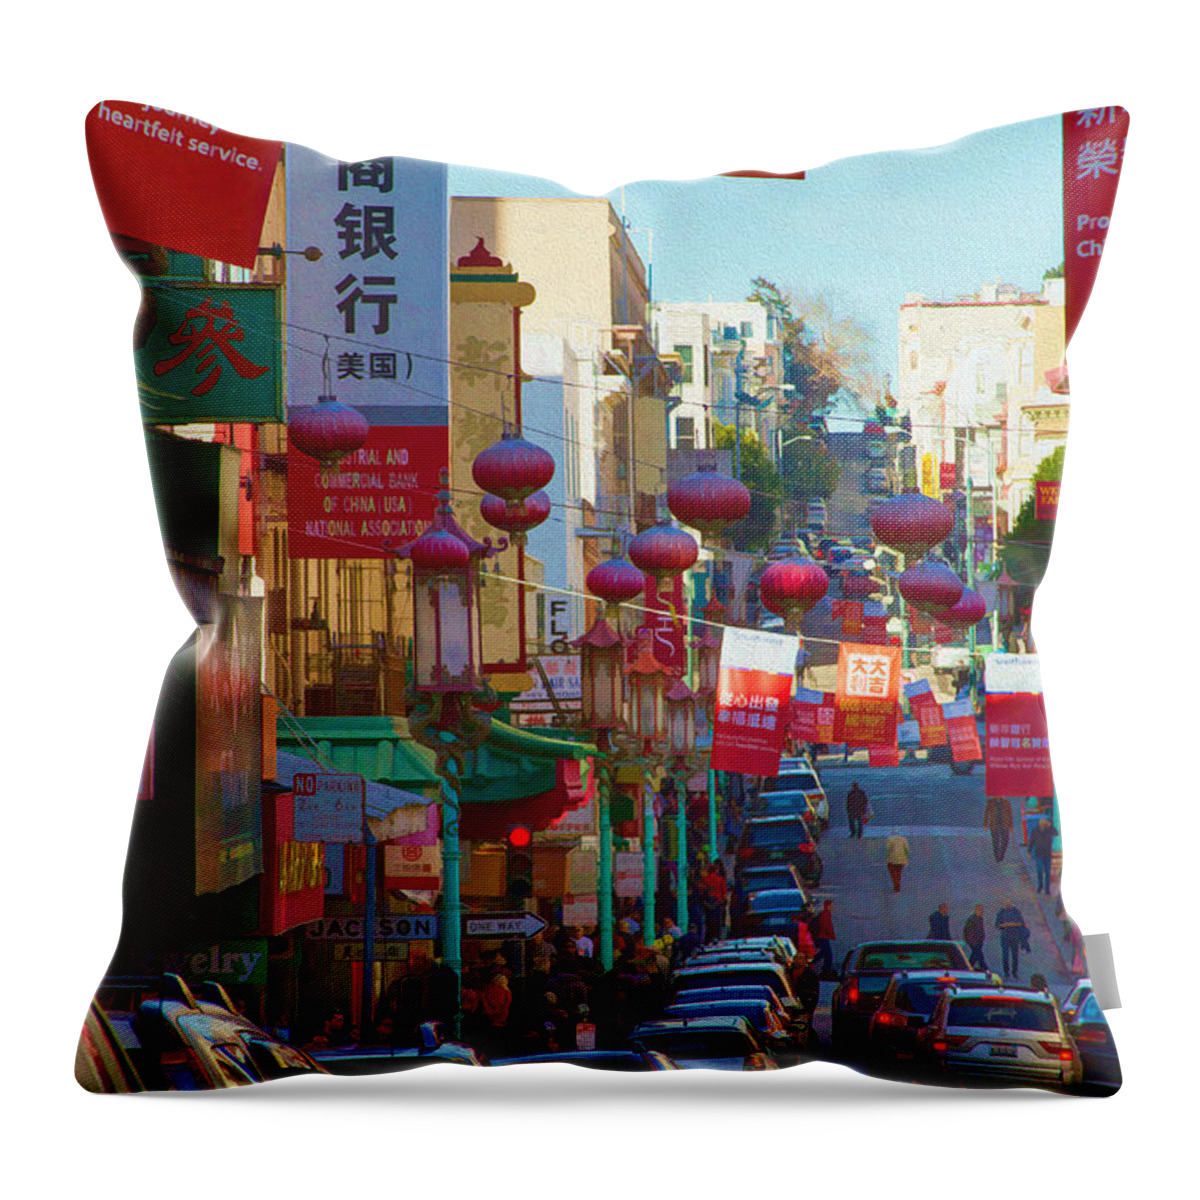 Bonnie Follett Throw Pillow featuring the photograph Chinatown Street Scene by Bonnie Follett